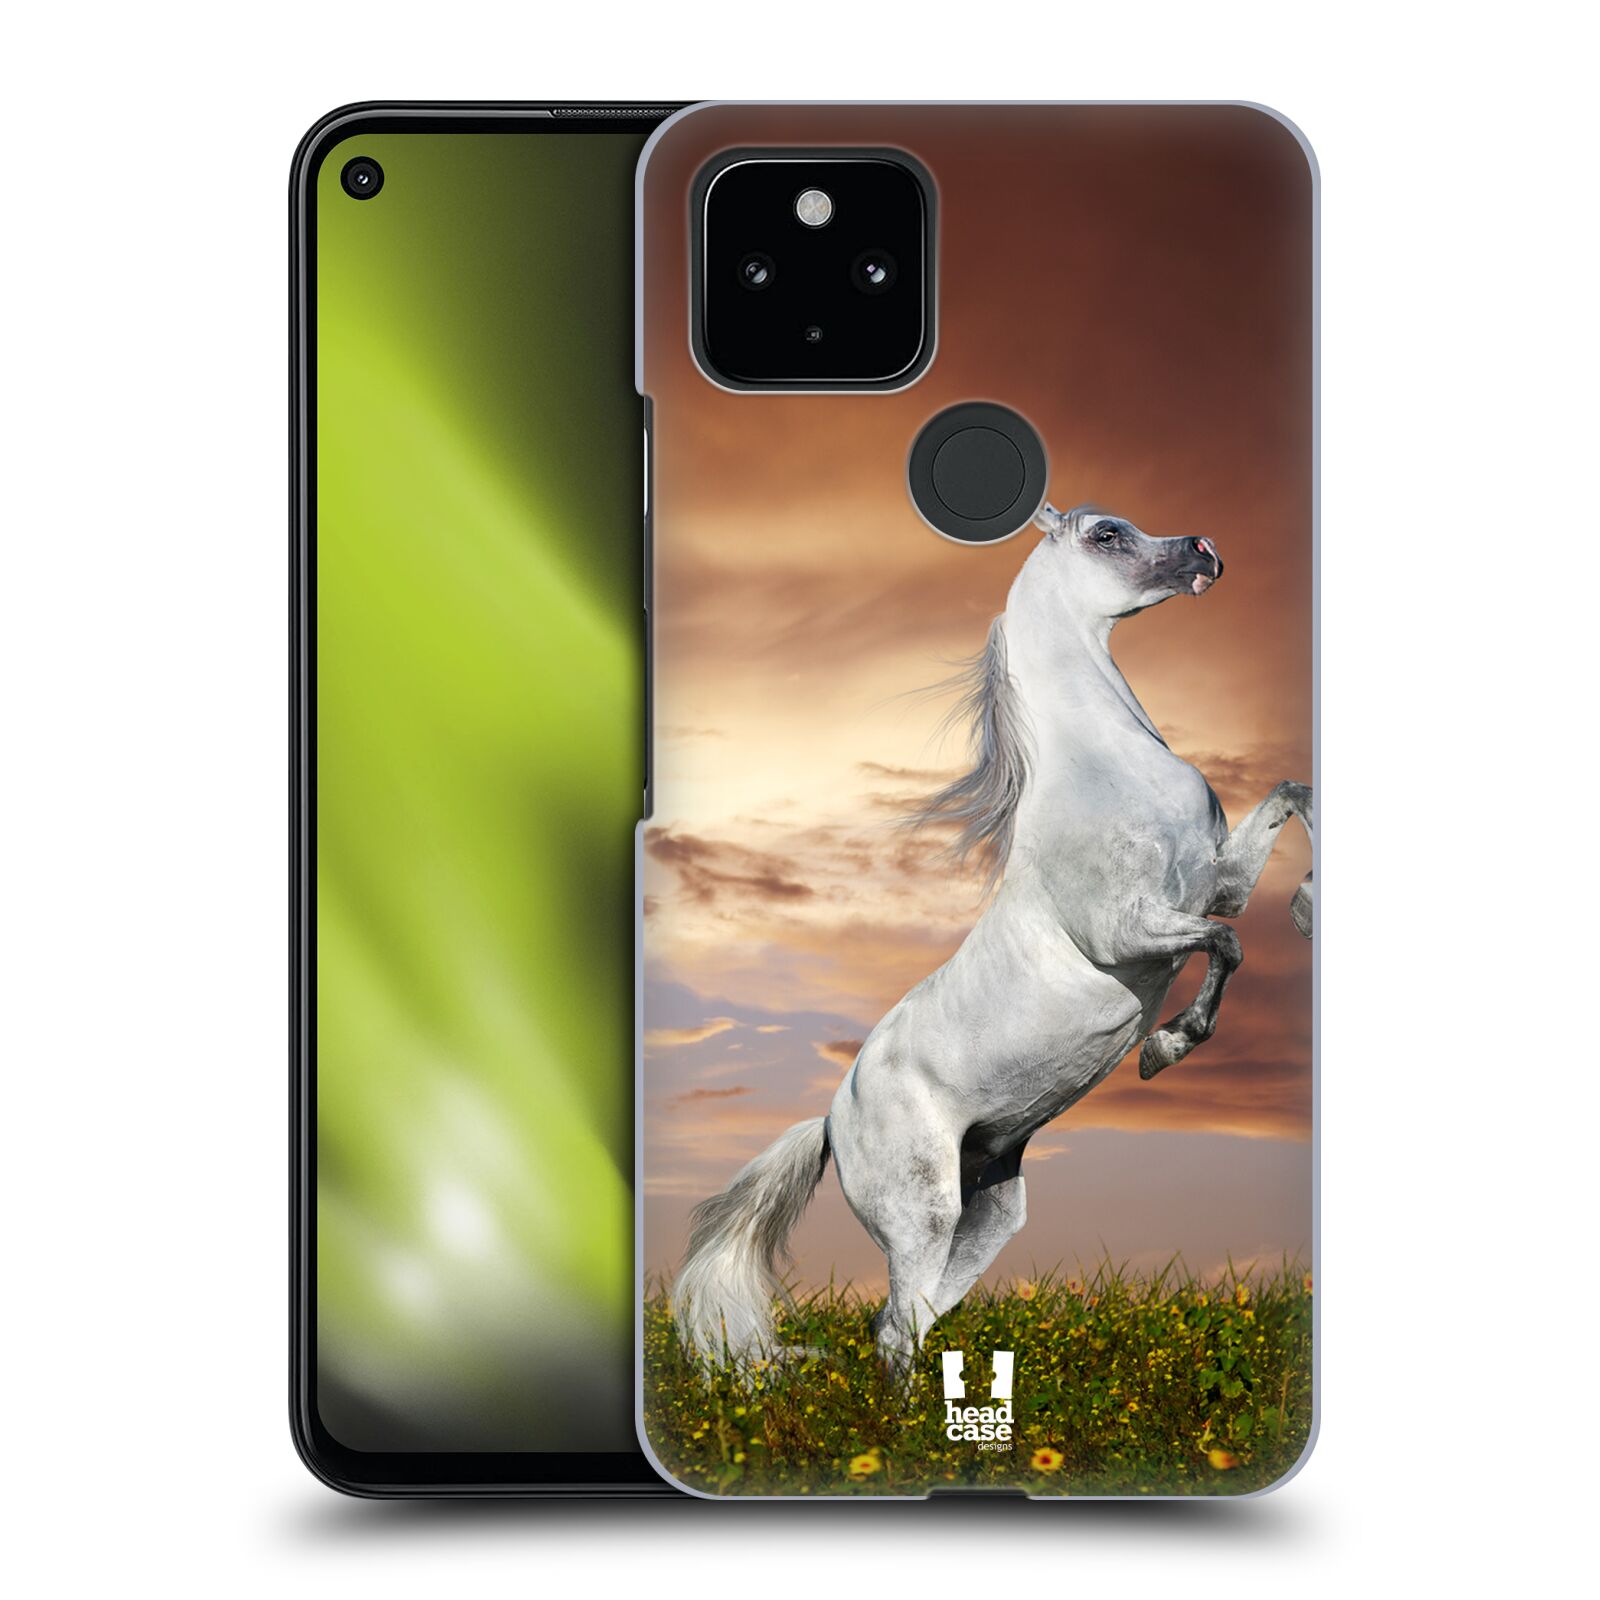 Zadní obal pro mobil Google Pixel 4a 5G - HEAD CASE - Svět zvířat divoký kůň